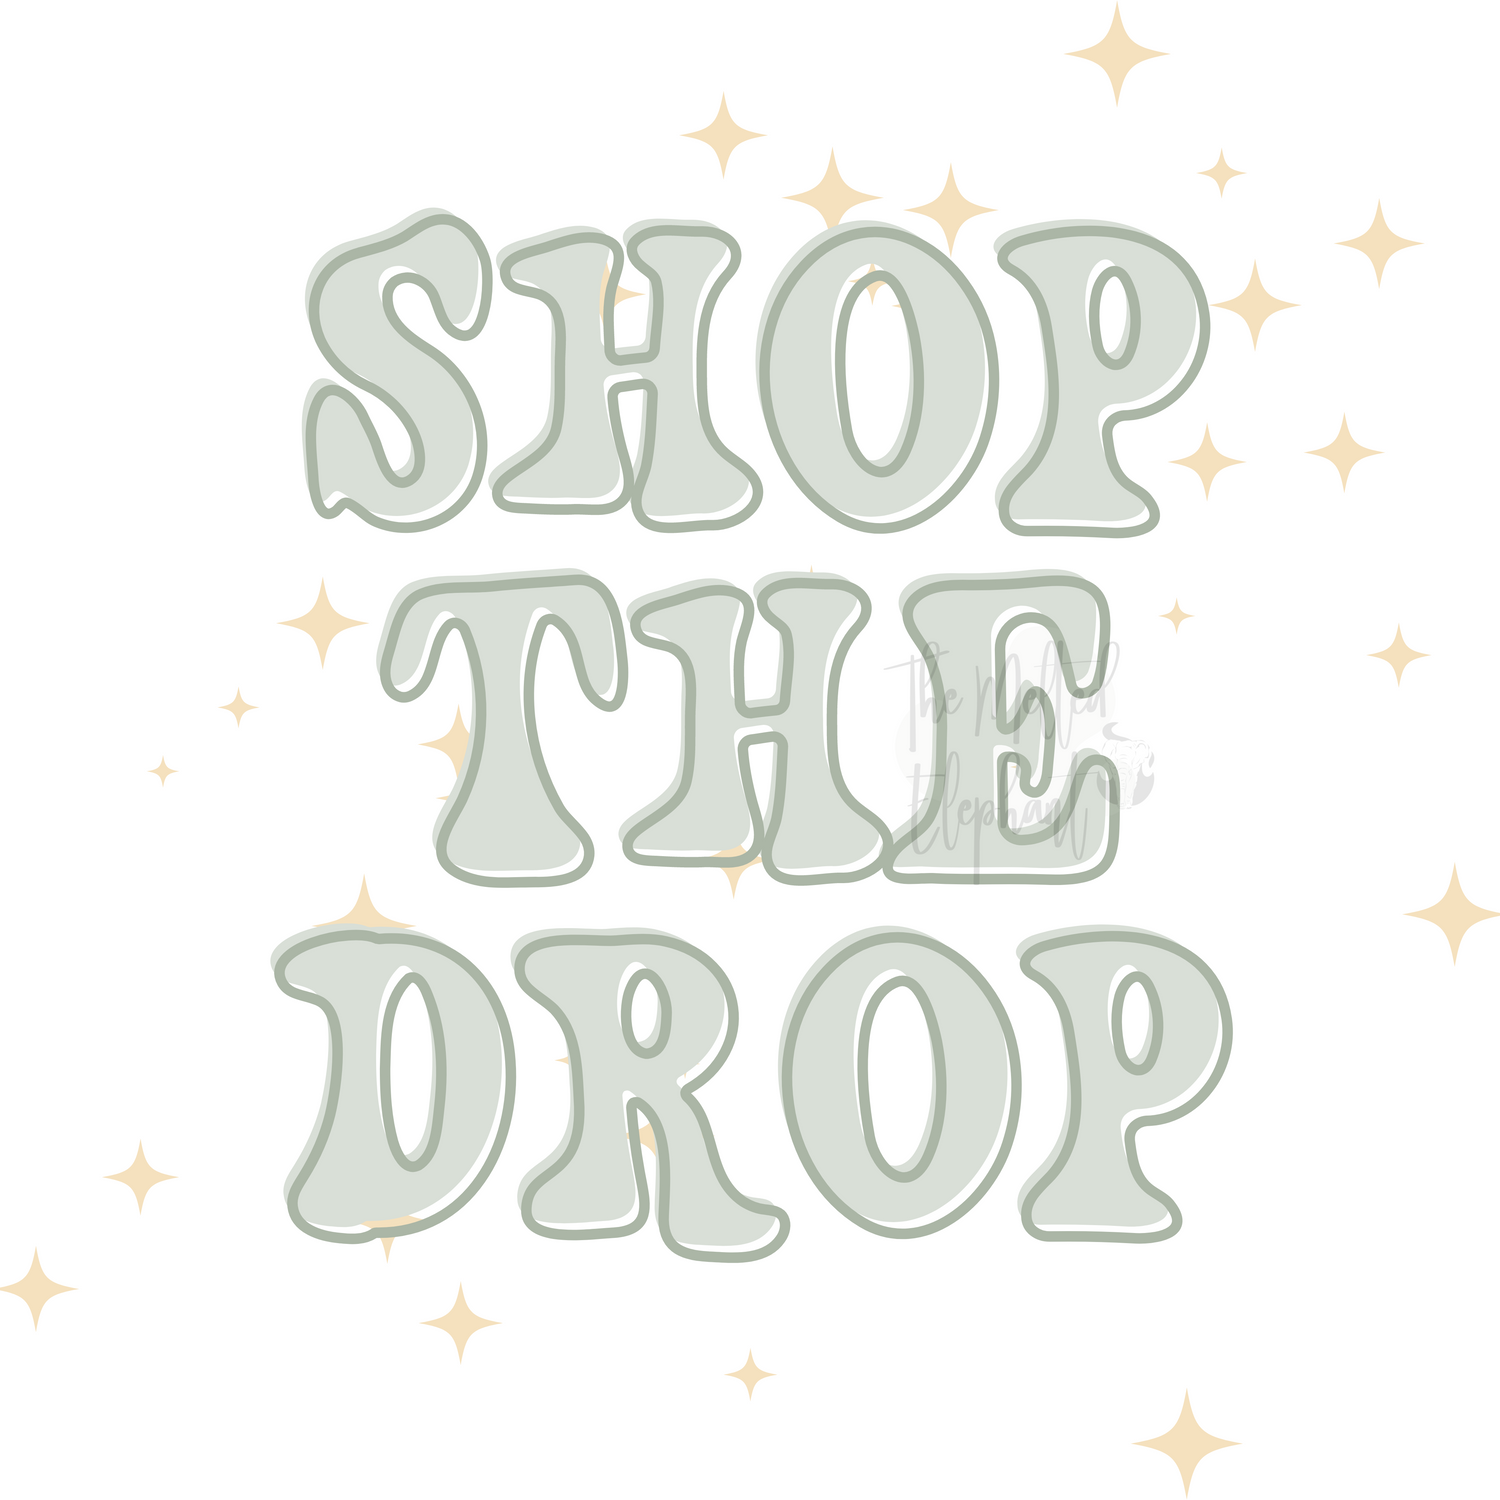 Shop the Drop